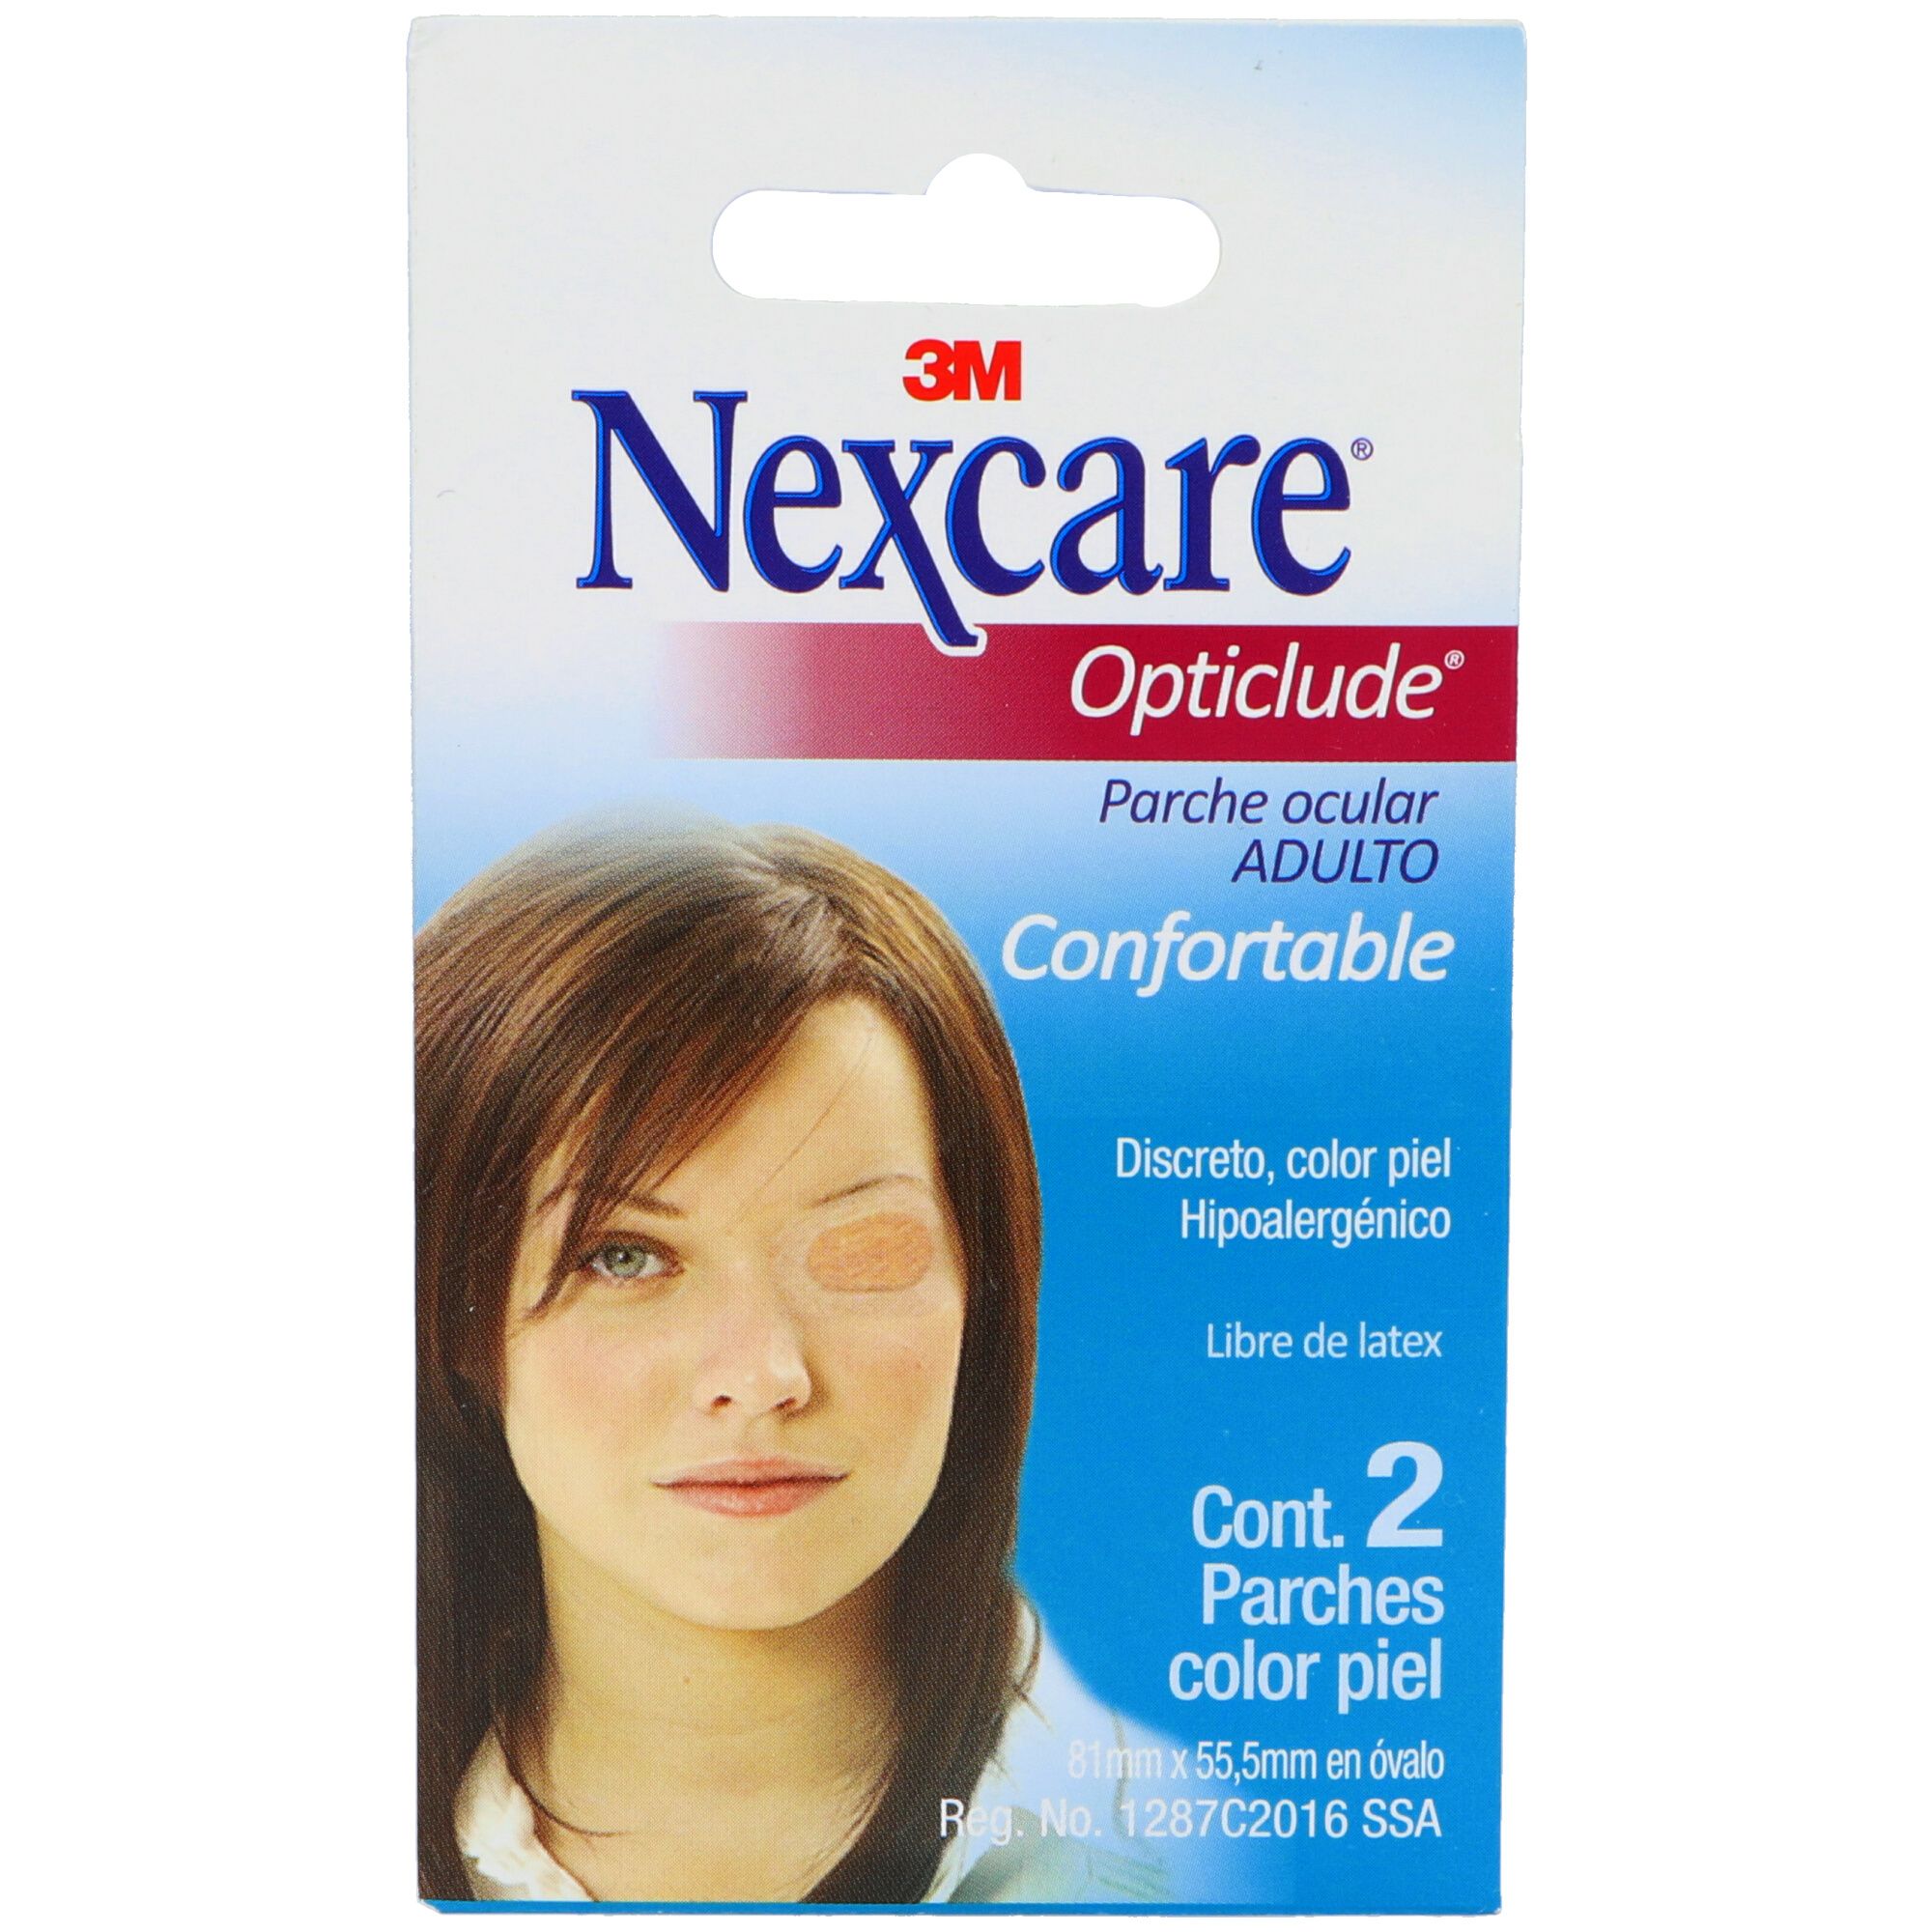 Precio Parche ocular Nexcare Opticlude adulto | Farmalisto MX